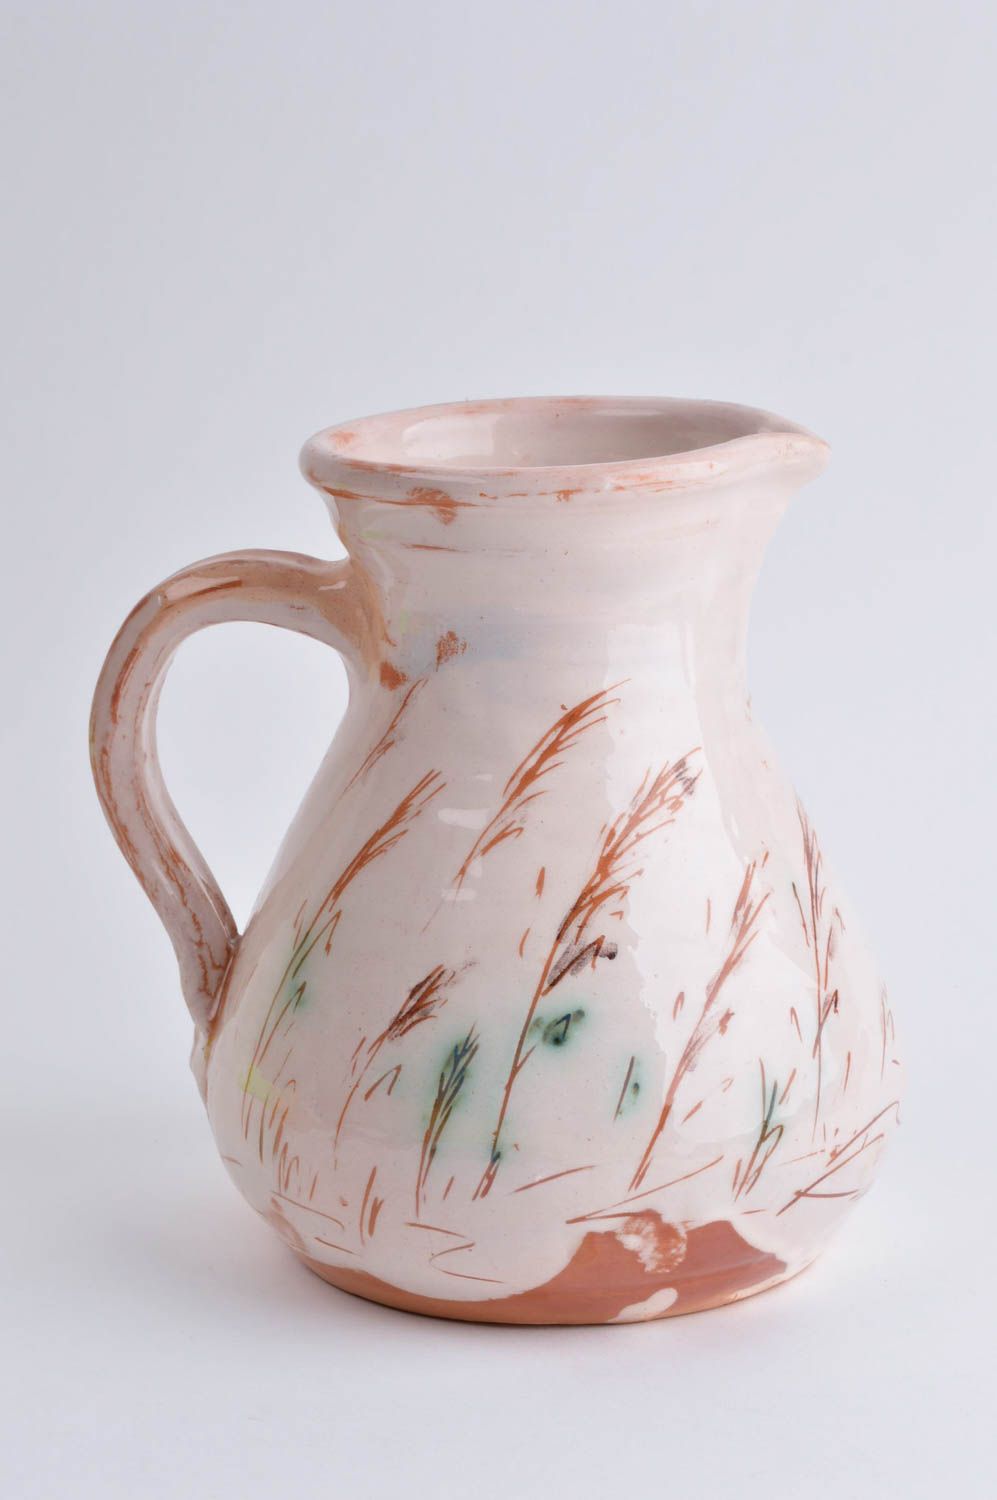 Geschirr aus Keramik handgefertigt Ton Krug ausgefallener Dekorartikel 2 L foto 2